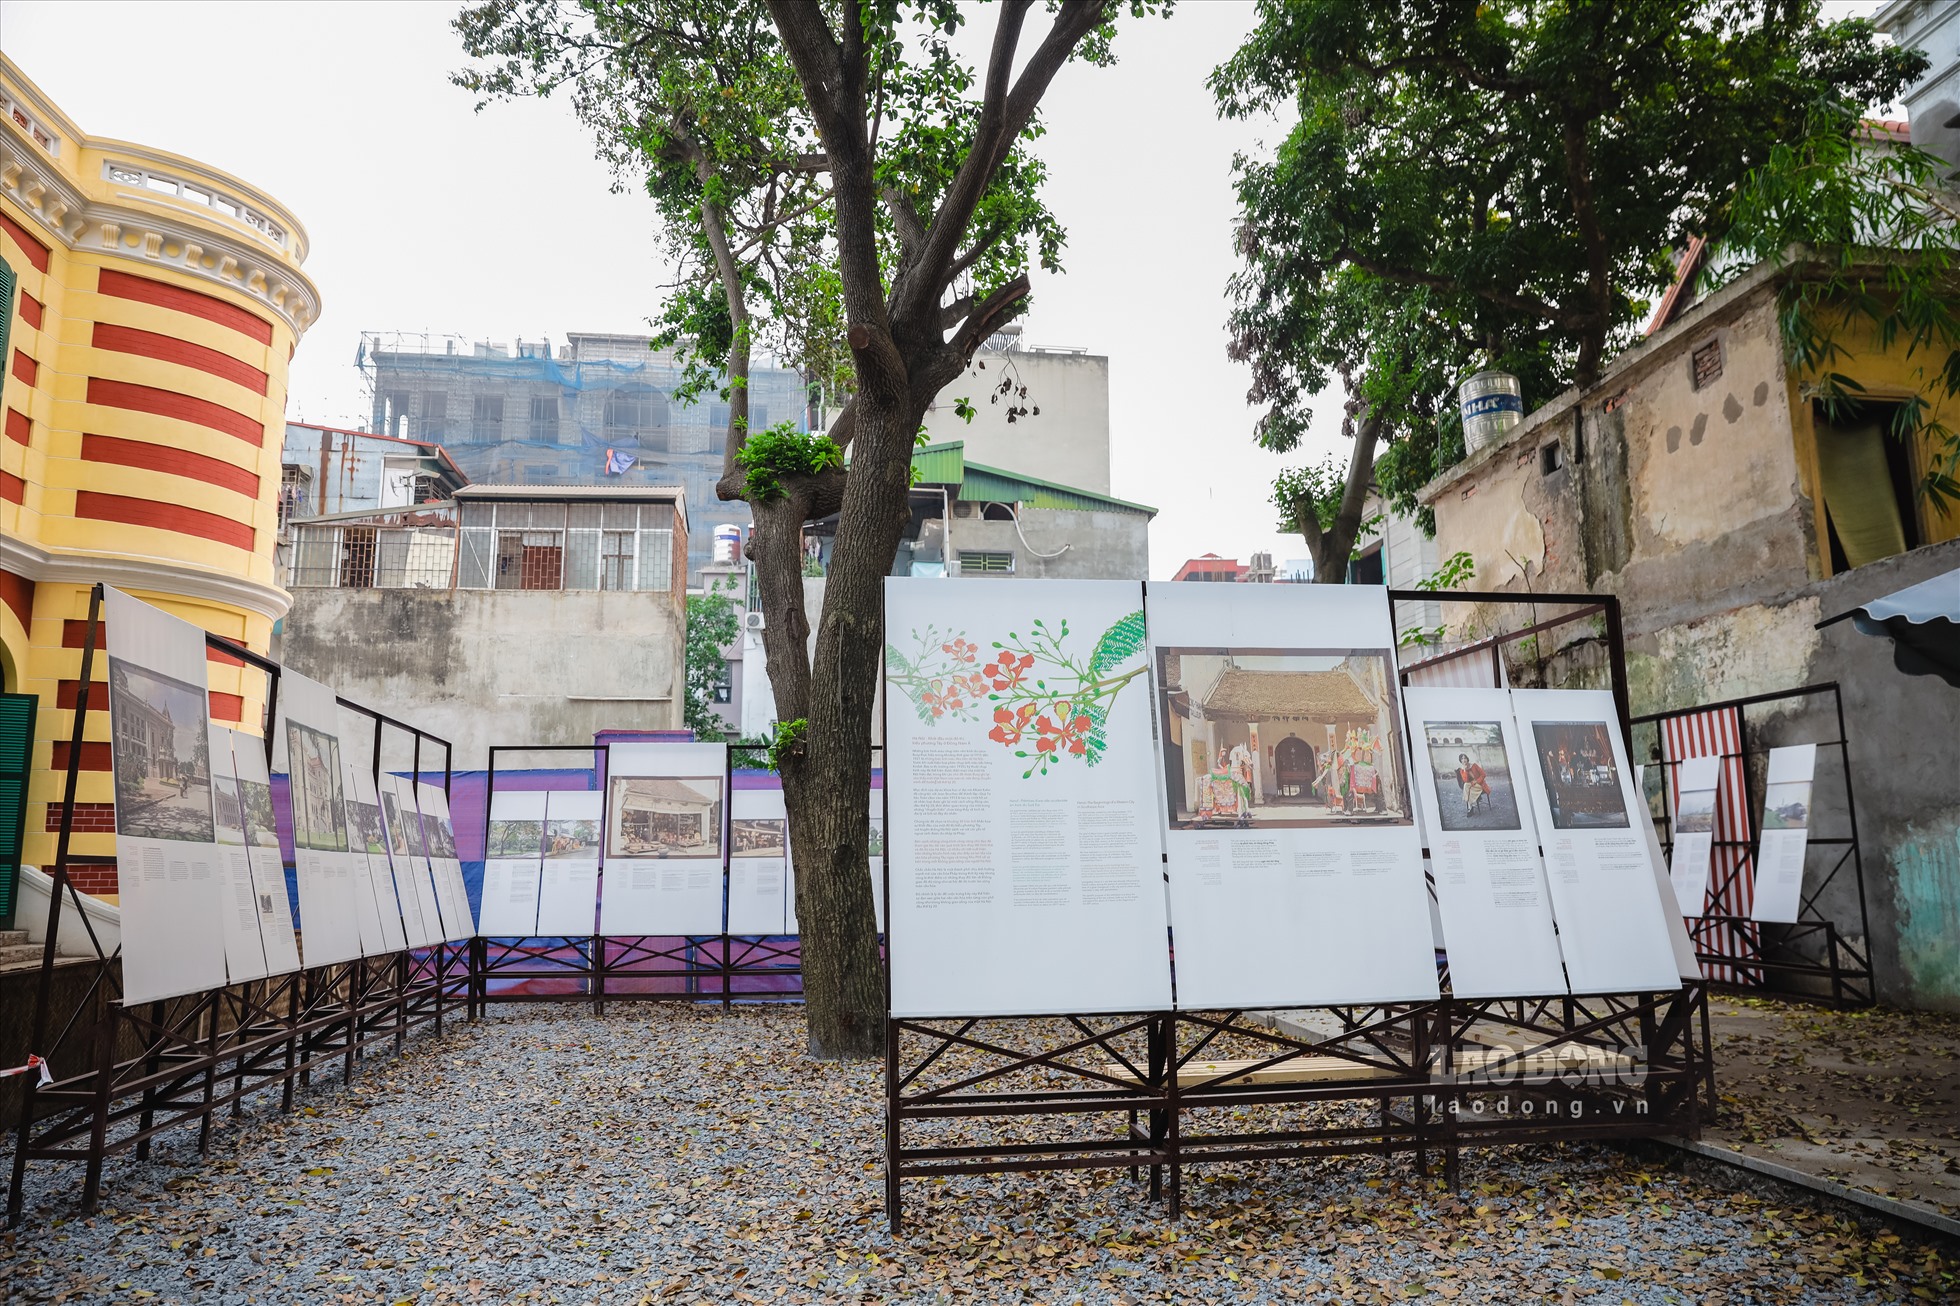 Gần 30 bức ảnh màu được trưng bày trong khuôn viên biệt thự cổ 49 Trần Hưng Đạo. Đây là những bức ảnh màu đầu tiên khắc họa quá trình biến đổi của Hà Nội theo dòng lịch sử, được nhiếp ảnh gia Léon Busy (1874 - 1951) thực hiện.